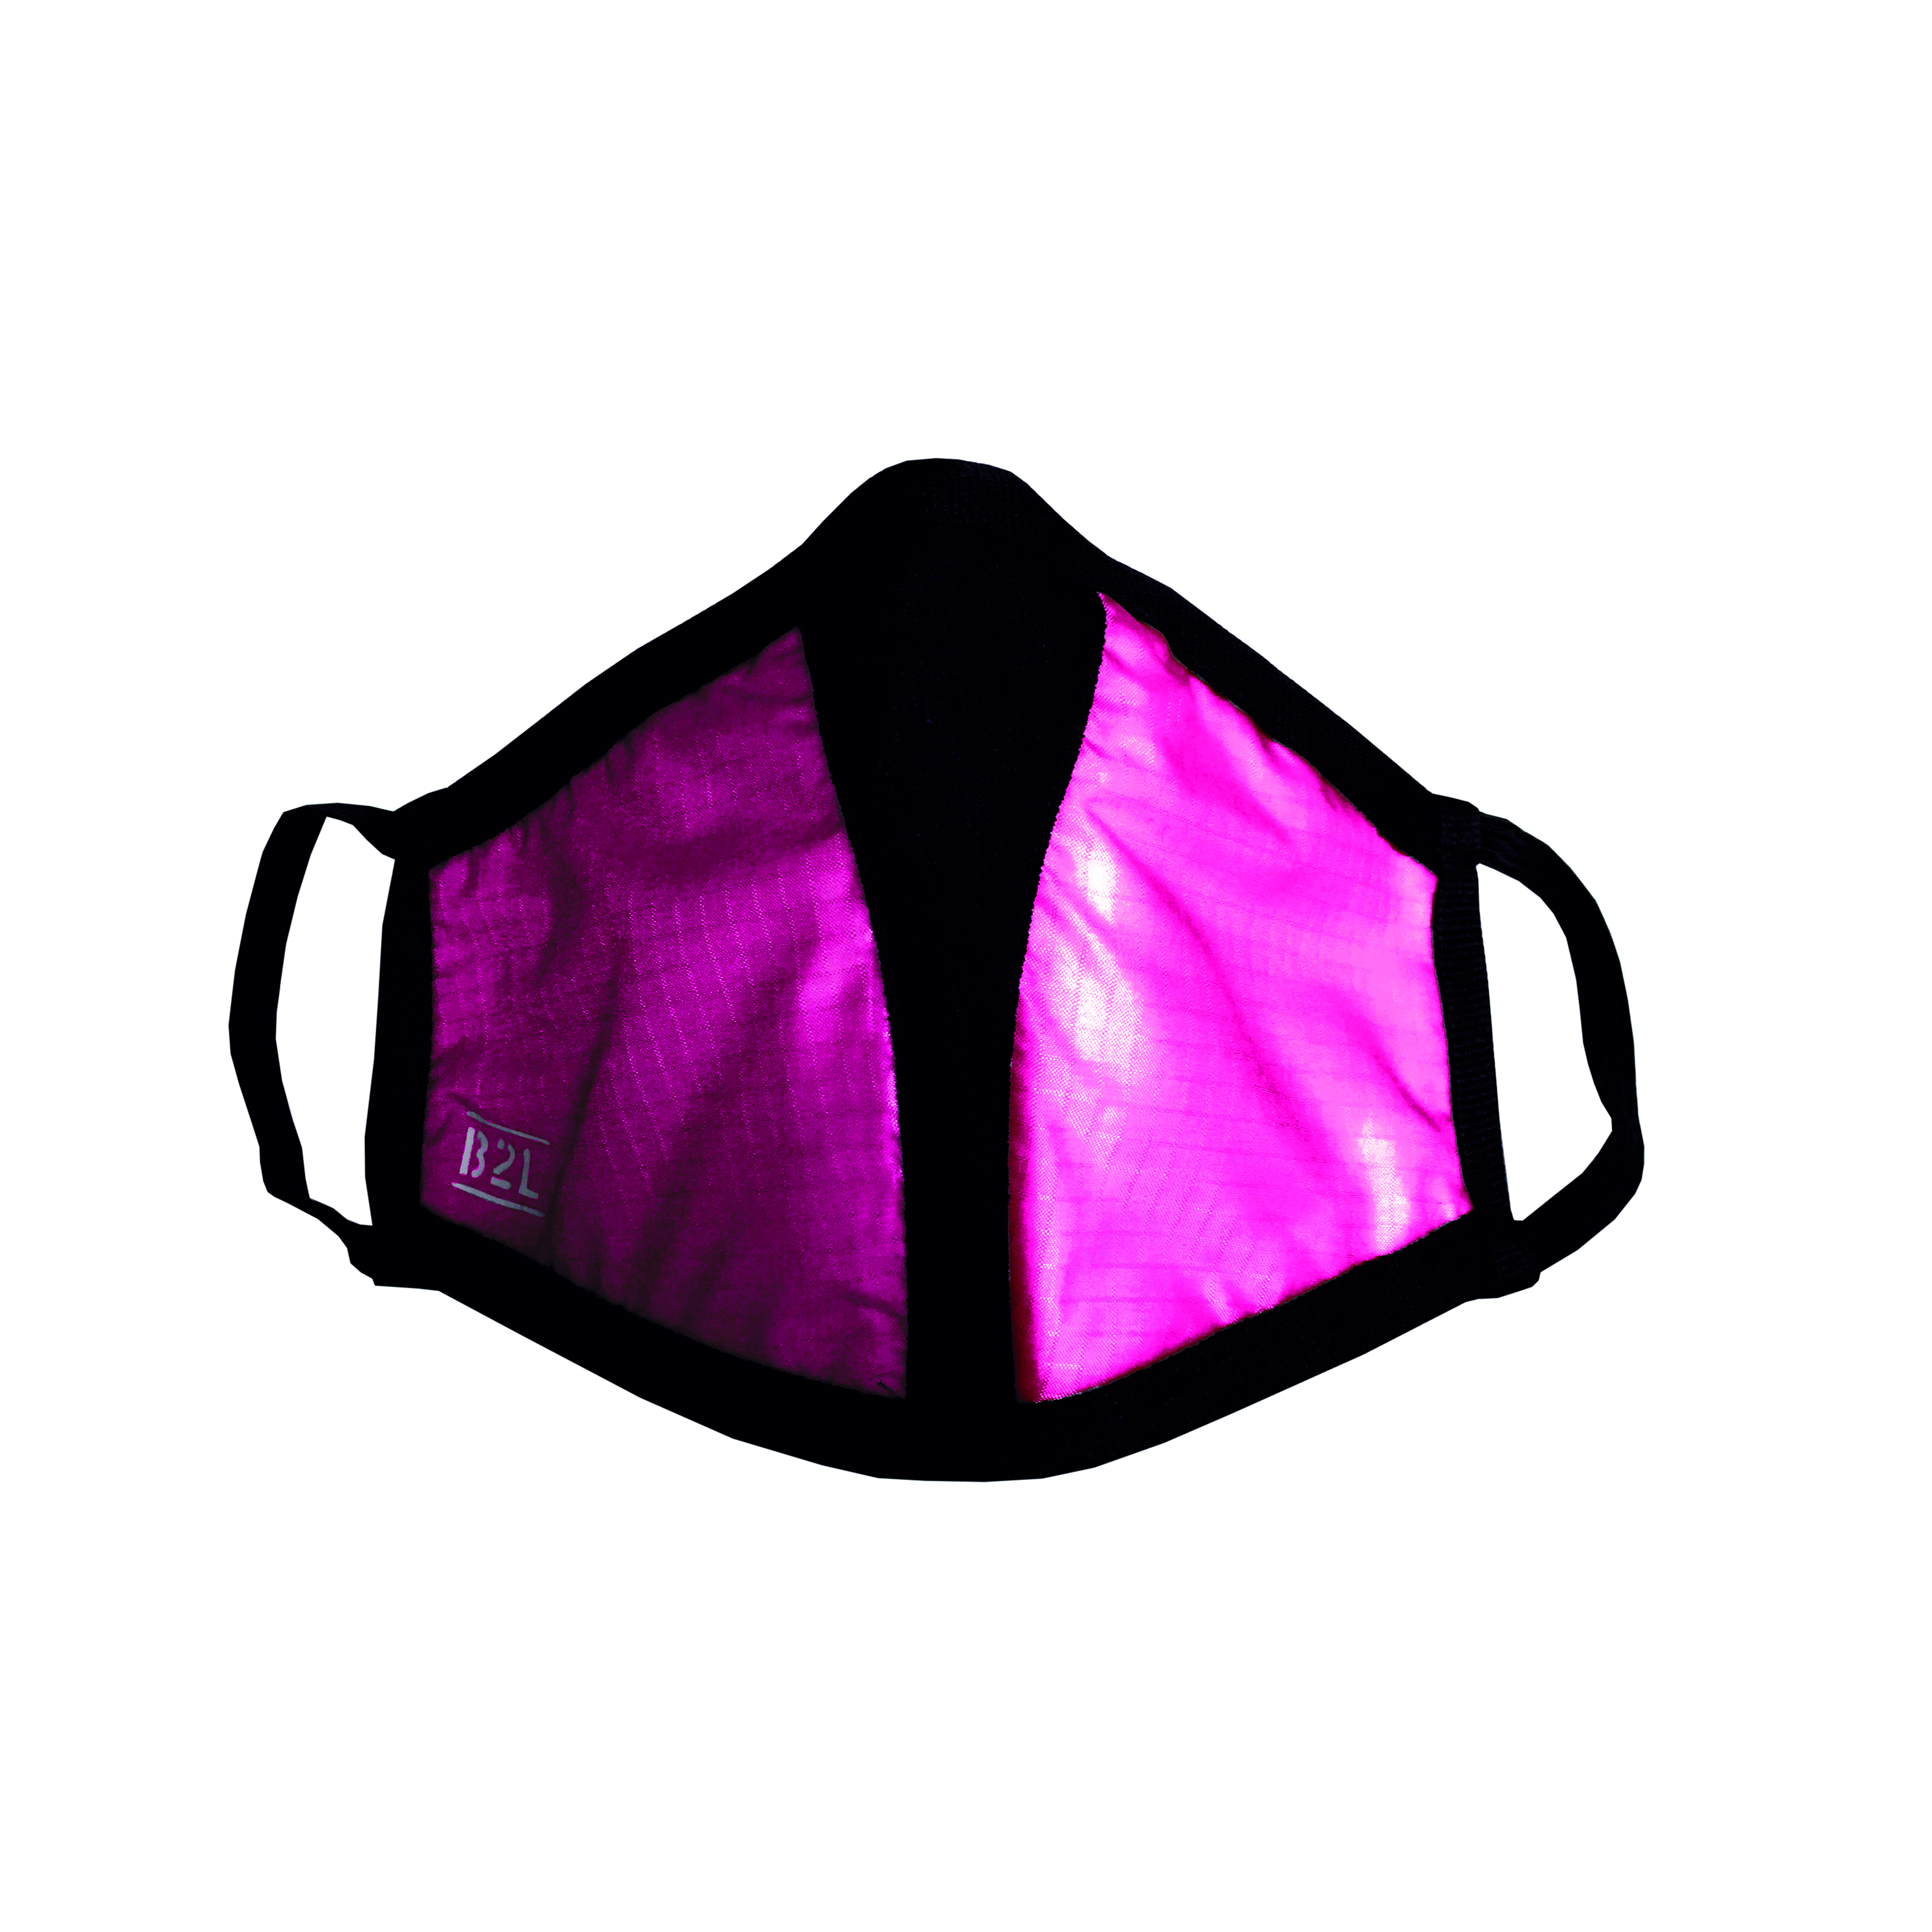 Travel Safe Mask Sonderedition pink - Gesichtsmaske